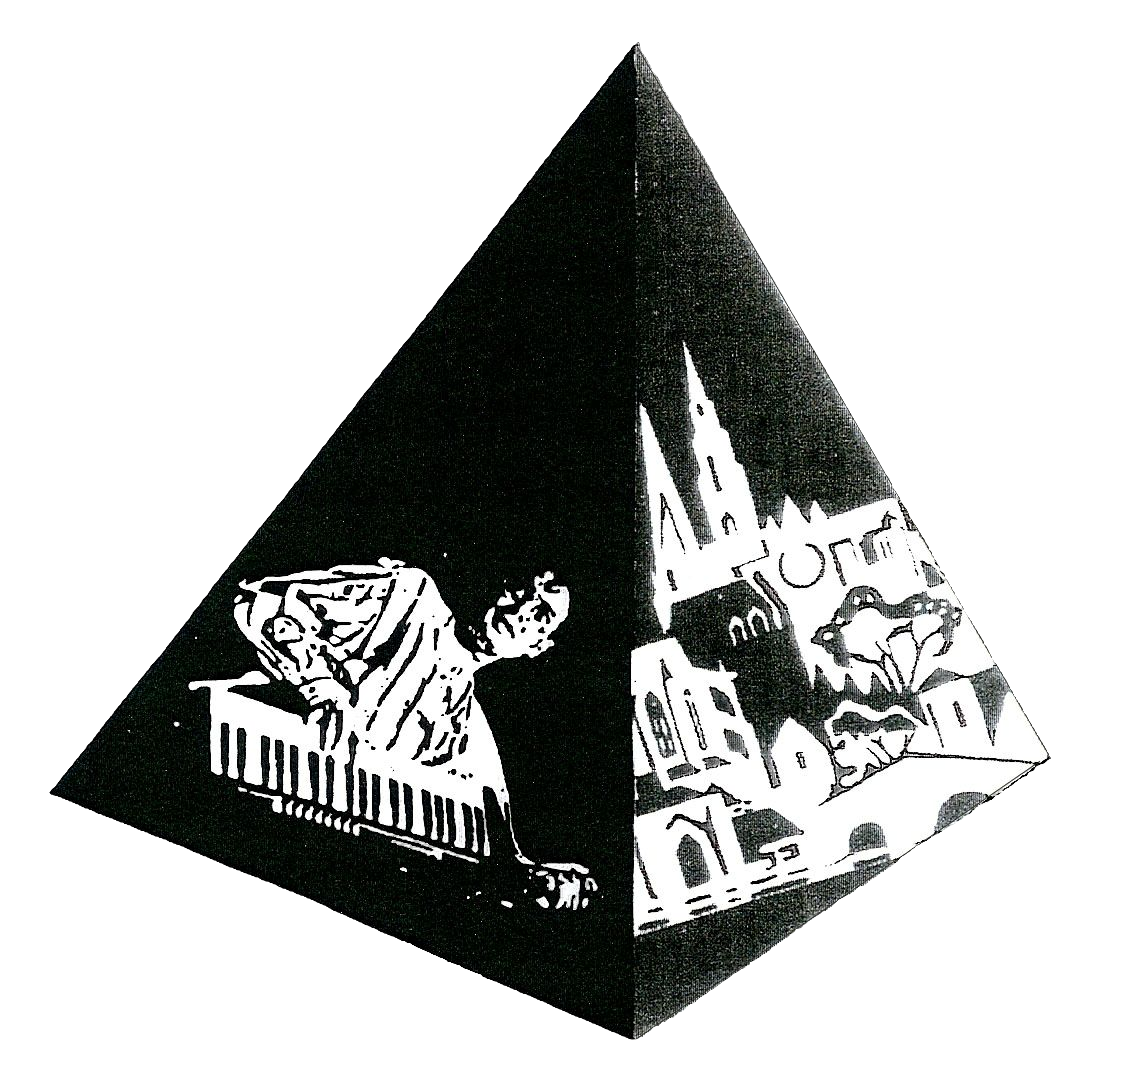 Bruno Mignot École de musique logo